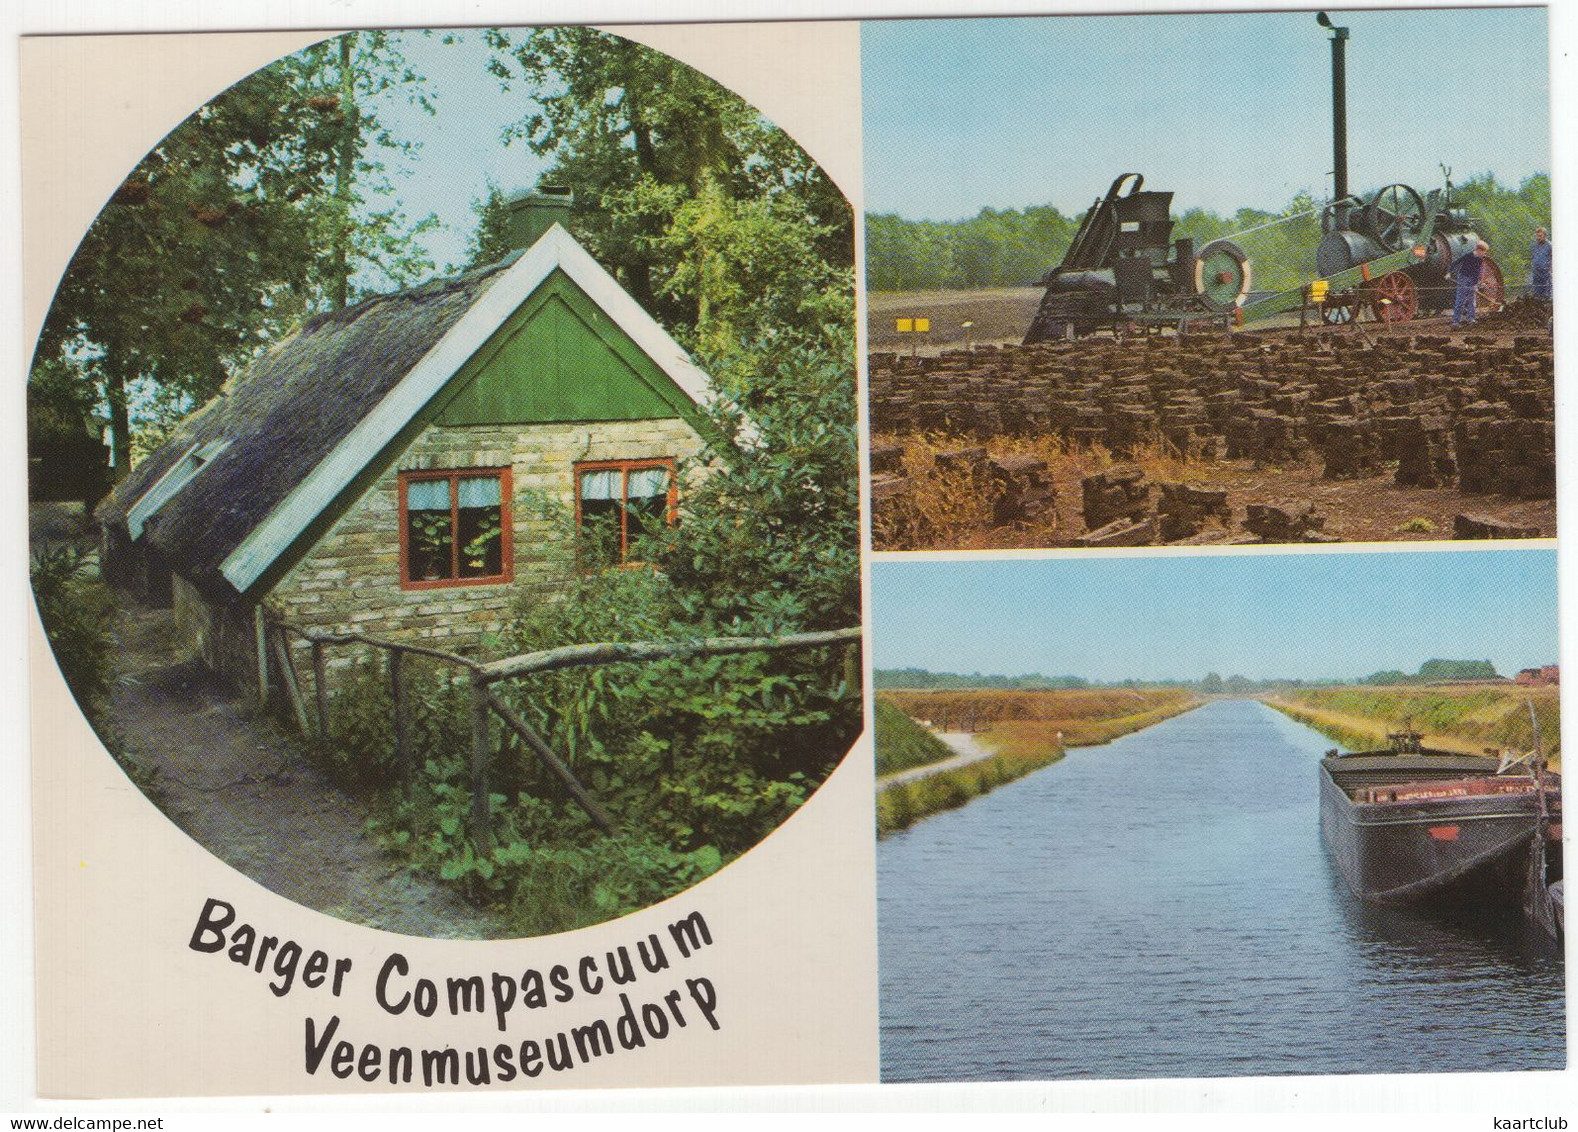 Barger Compascuum - Veenmuseumdorp 't Aole Compas' - (gem. Emmen, Nederland) - Nr. L 8265 - O.a. Locomobiel, Turf - Emmen